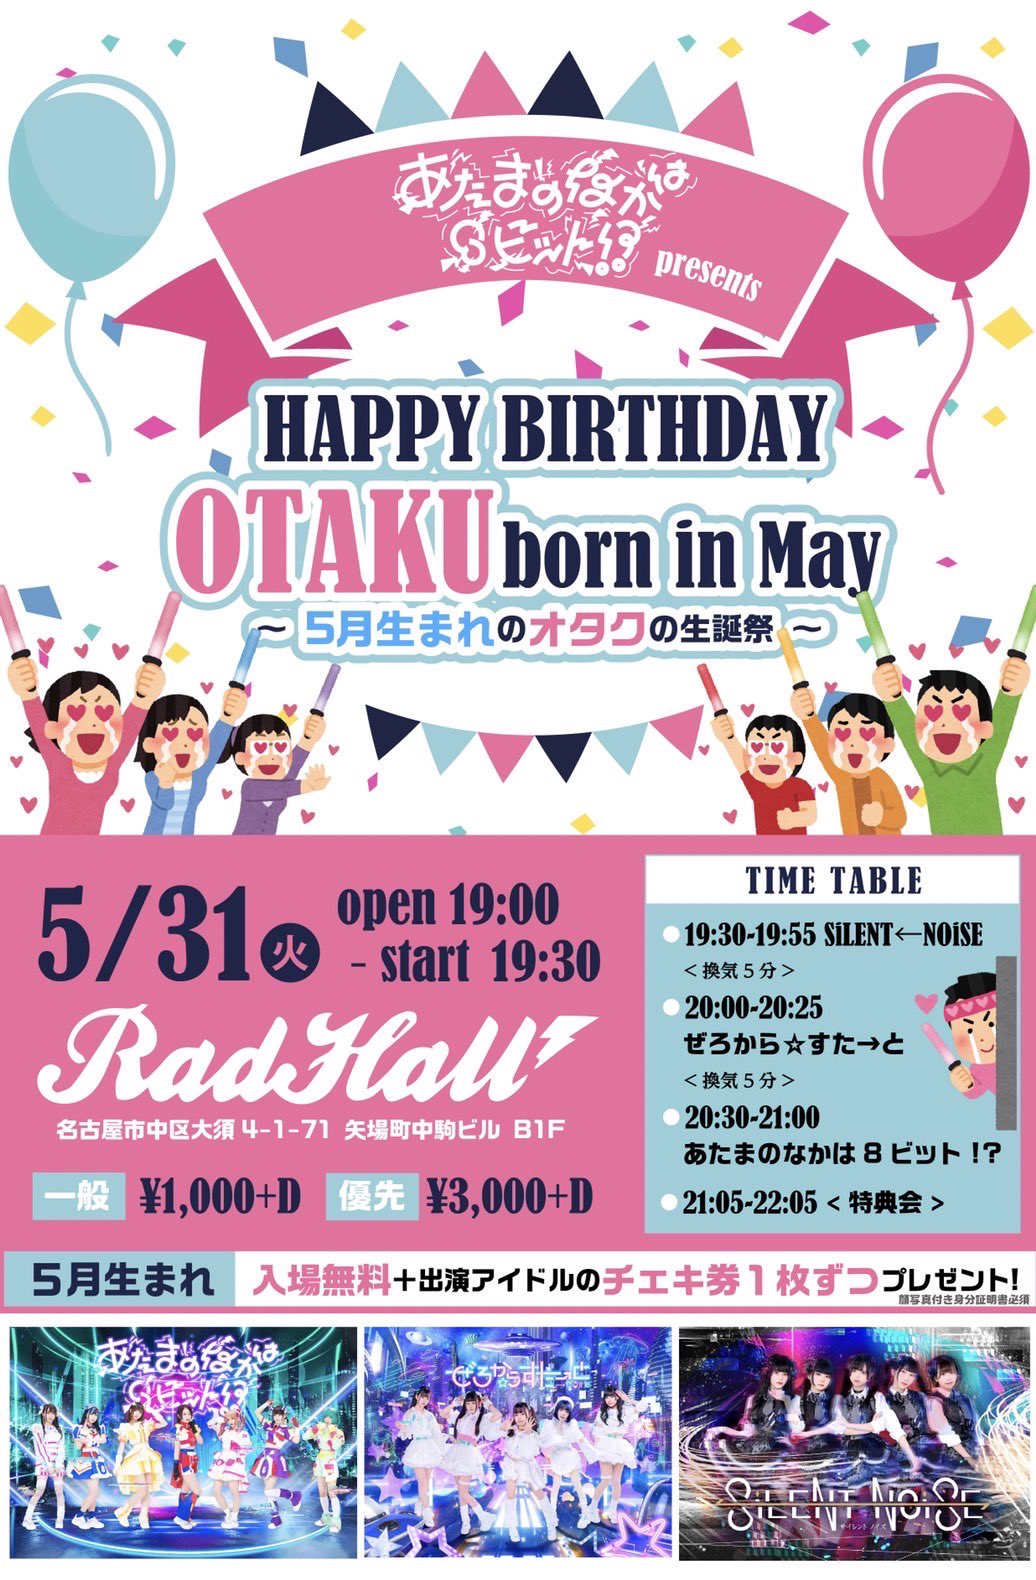 あたまのなかは8ビット pre 〜HAPPY BIRTHDAY OTAKU born in May〜